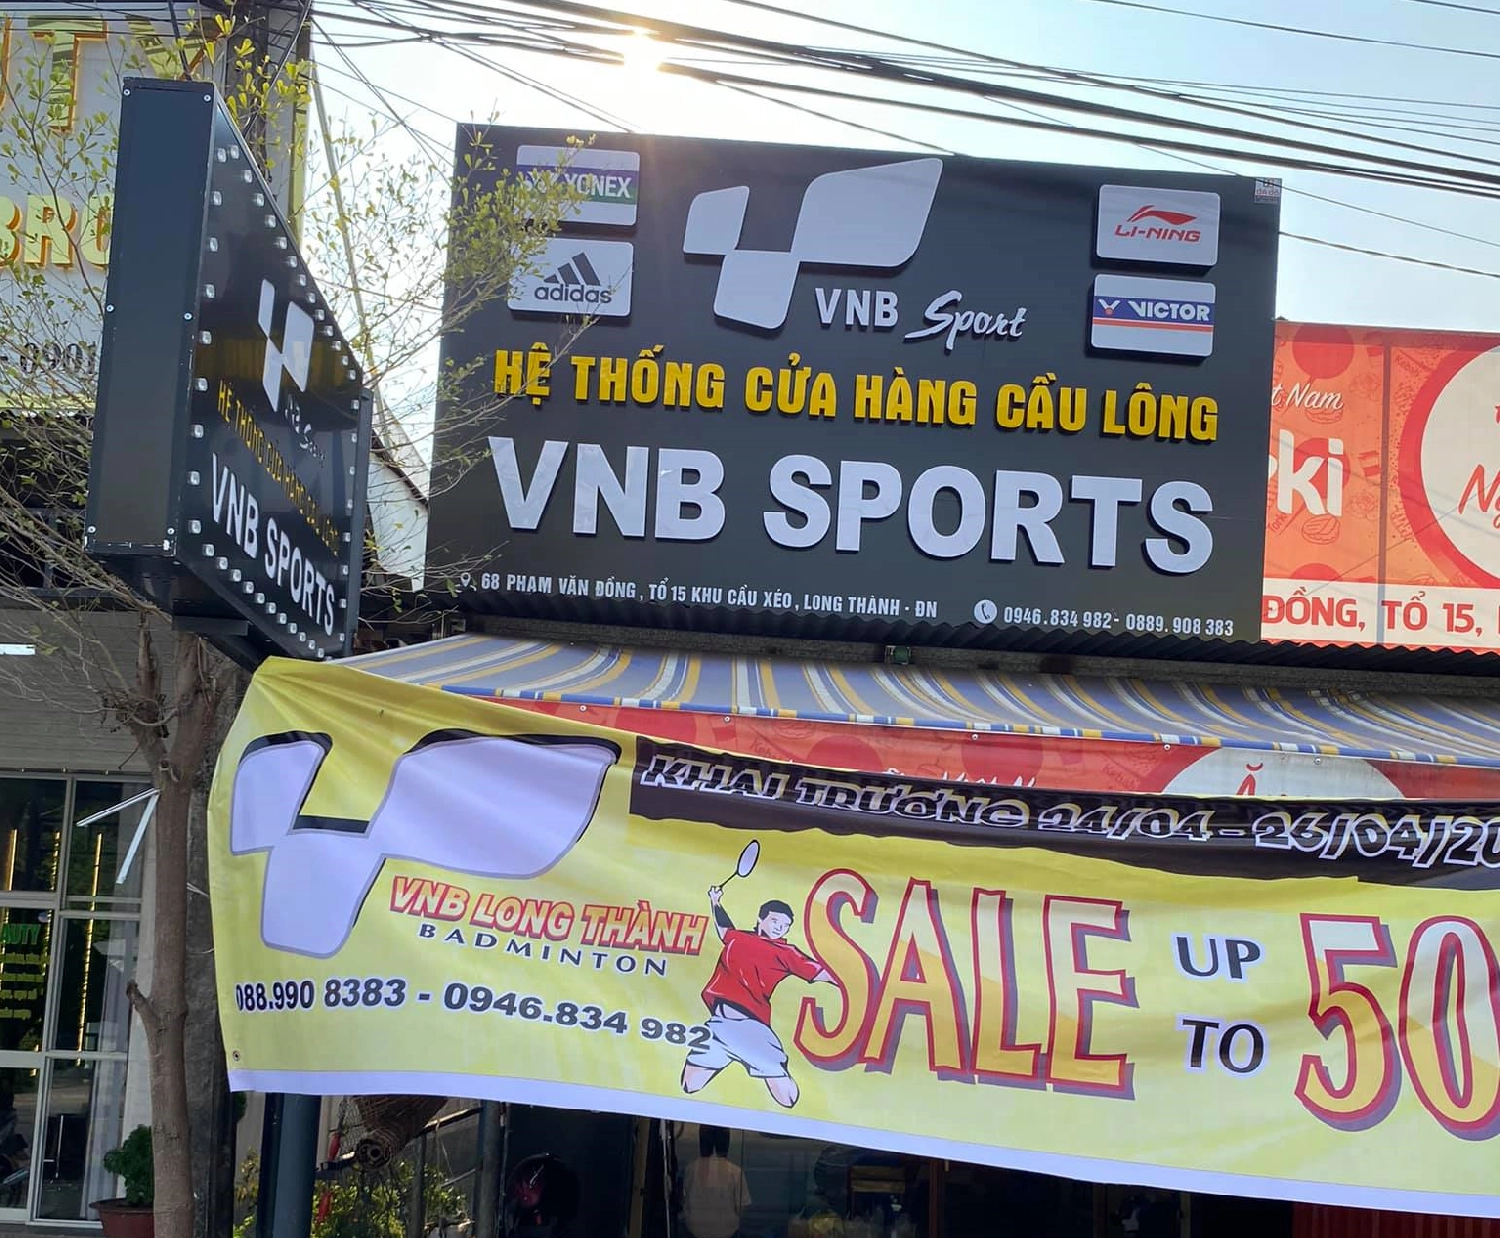 Sale Up To 50% Nhân Dịp Khai Trương Shop Cầu Lông Long Thành - Vnb Sports  Chi Nhánh Thứ 44 | Shopvnb